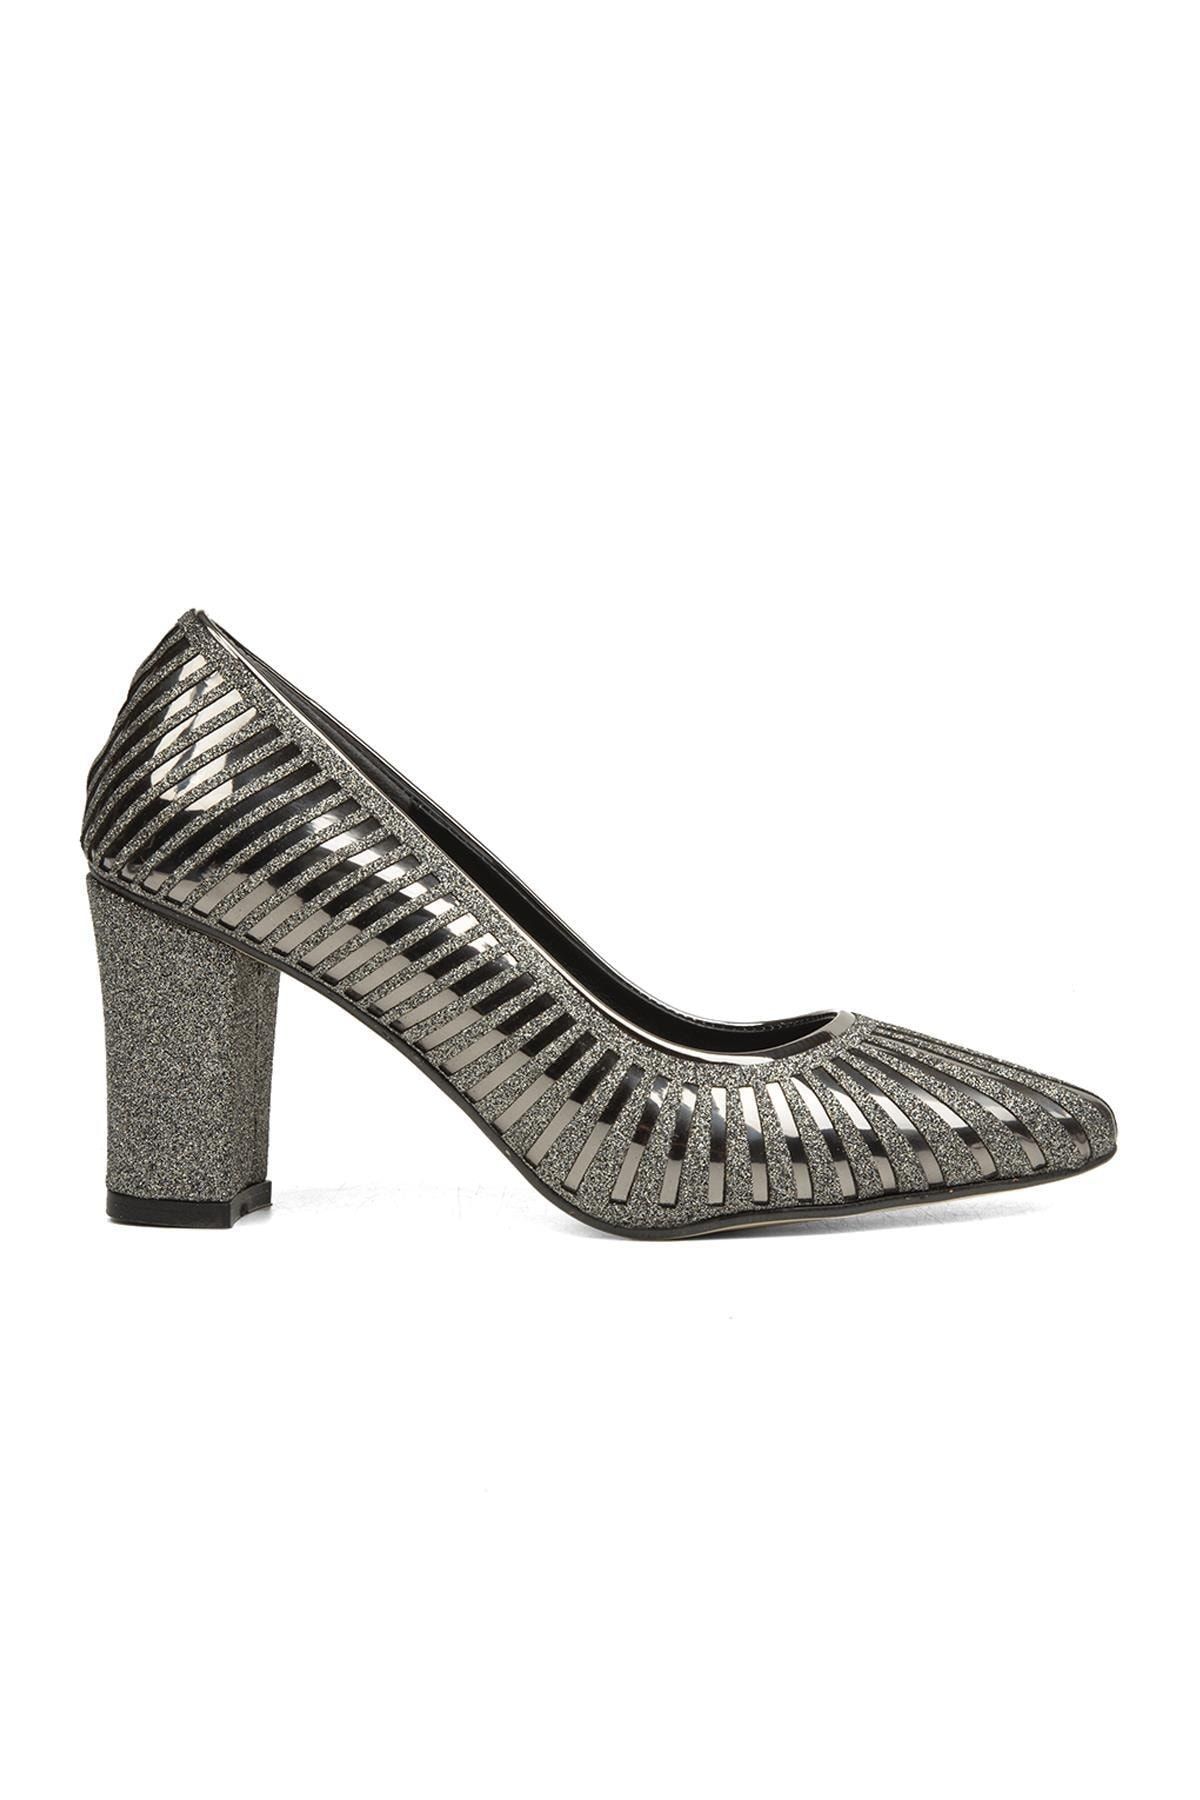 Pierre Cardin ® | Pc-52037-3478 Platin - Kadın Topuklu Ayakkabı